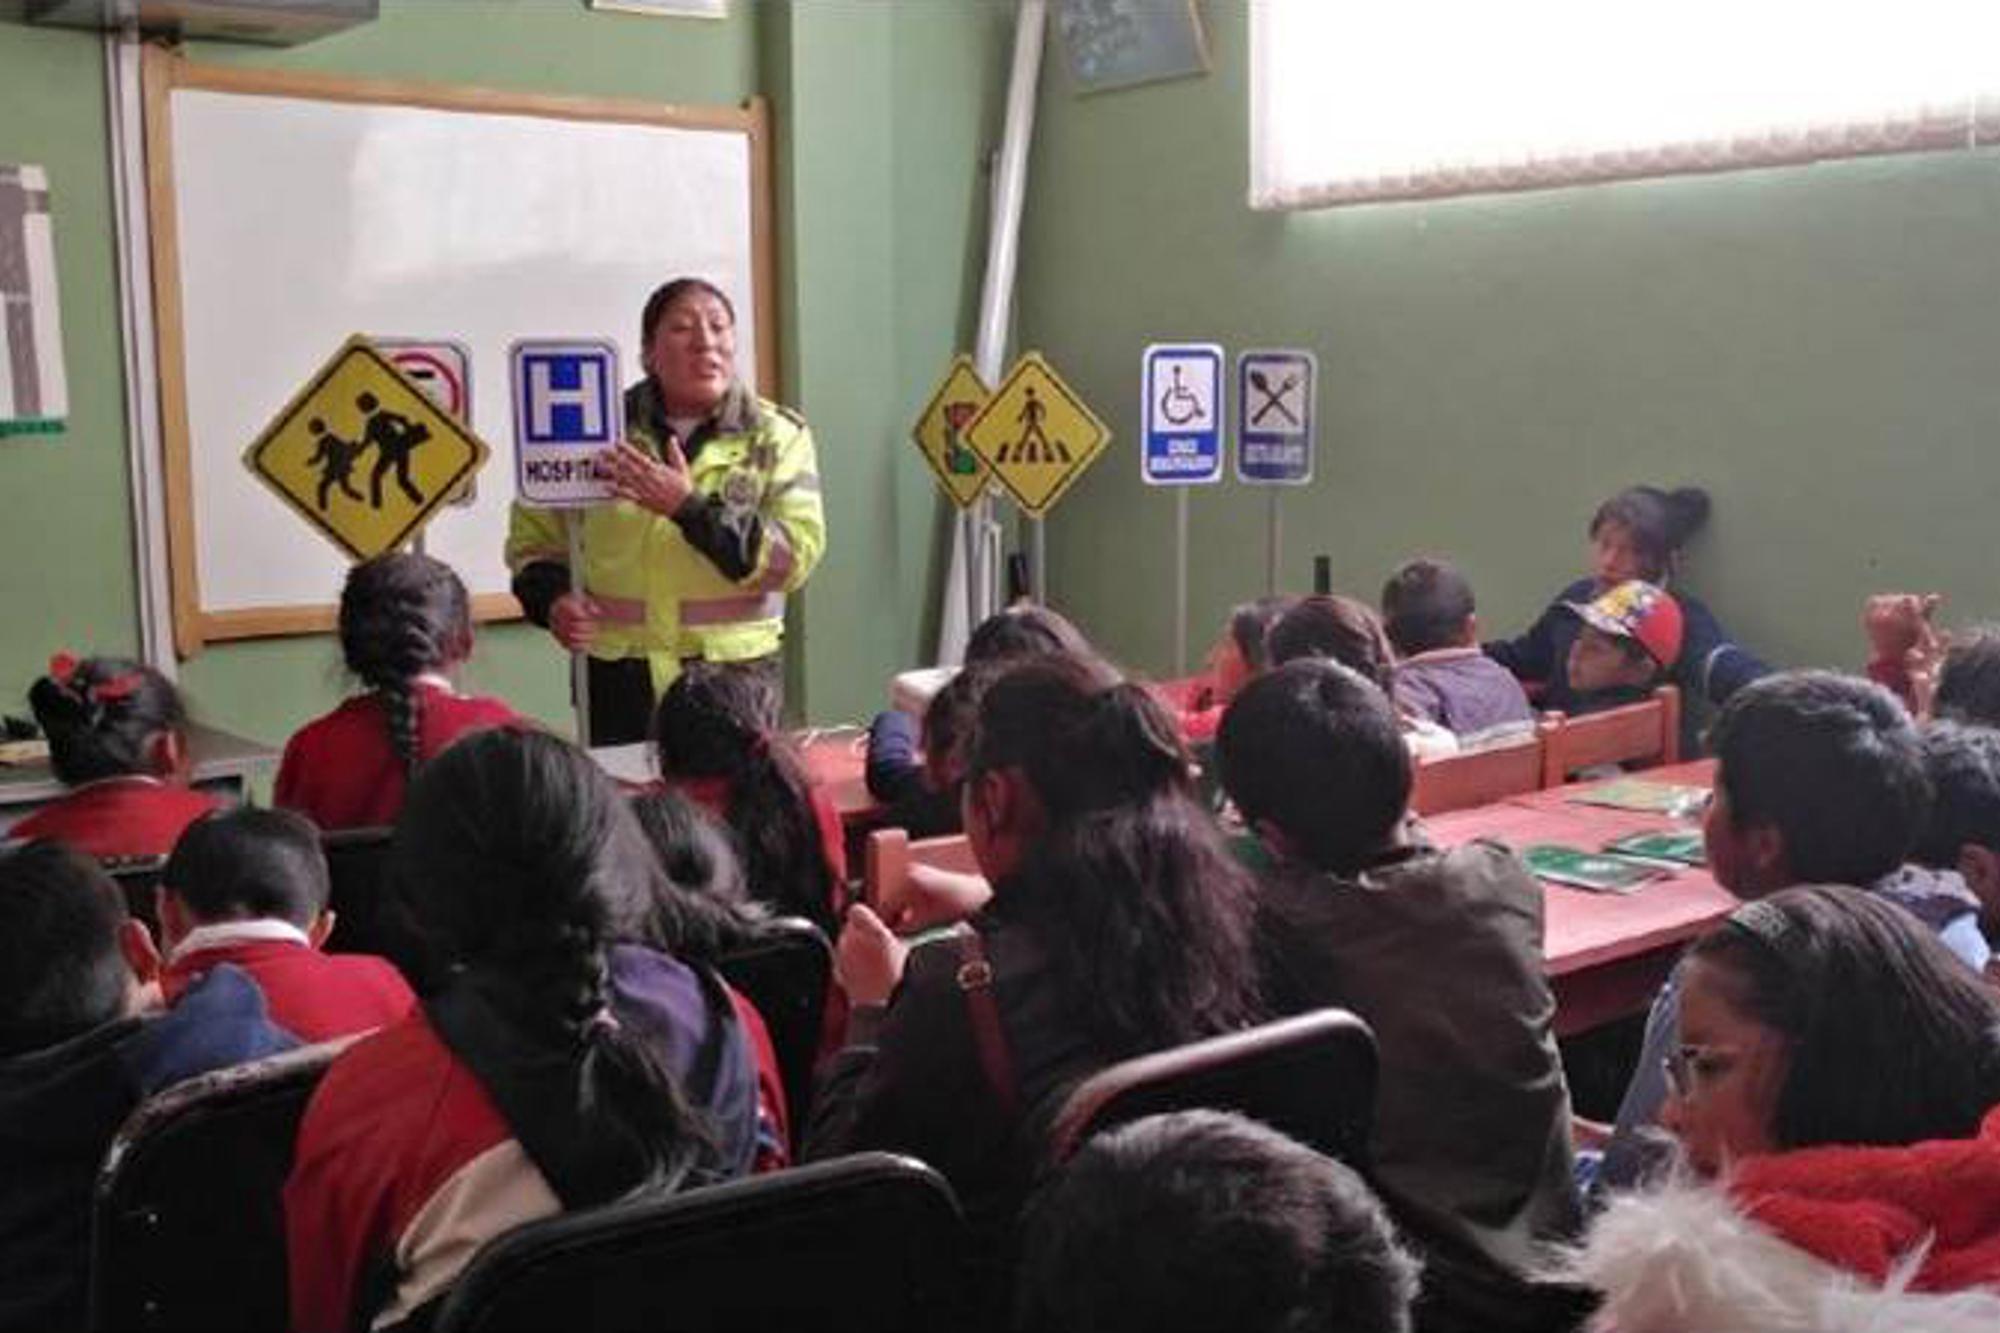 Barn i Bolivia sitter i ett klassrum- framför dem står en person och undervisar.